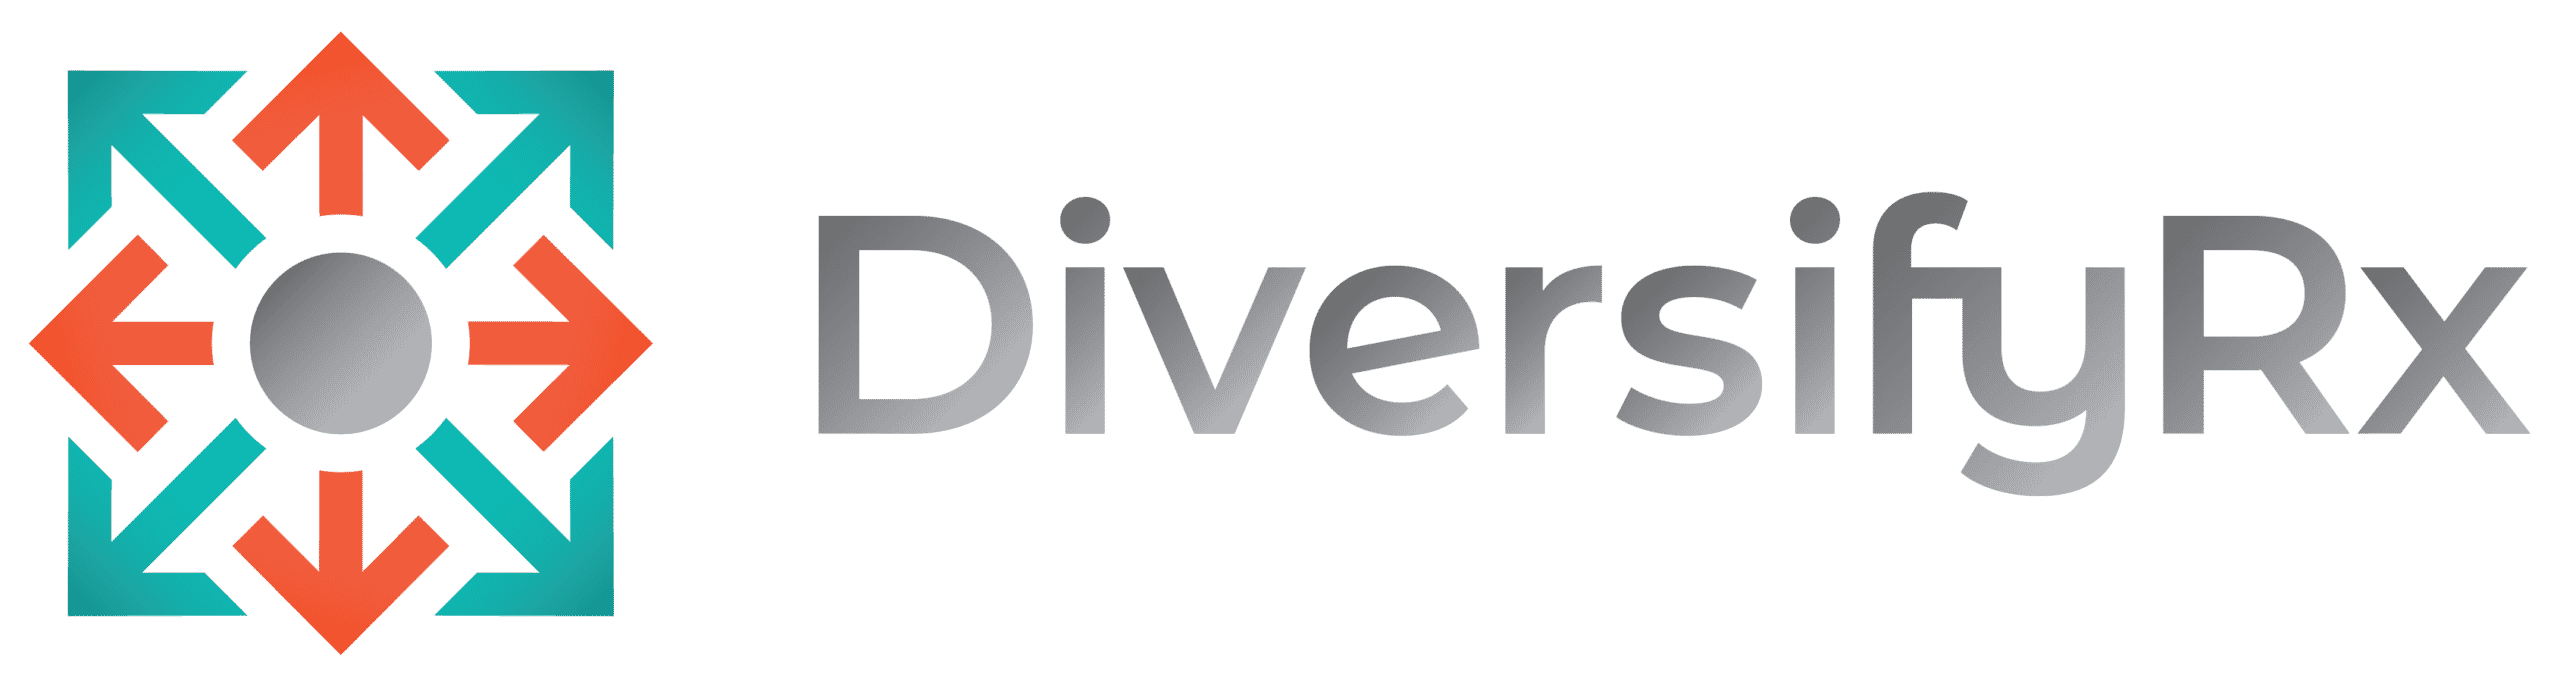 DiversifyRx Logo